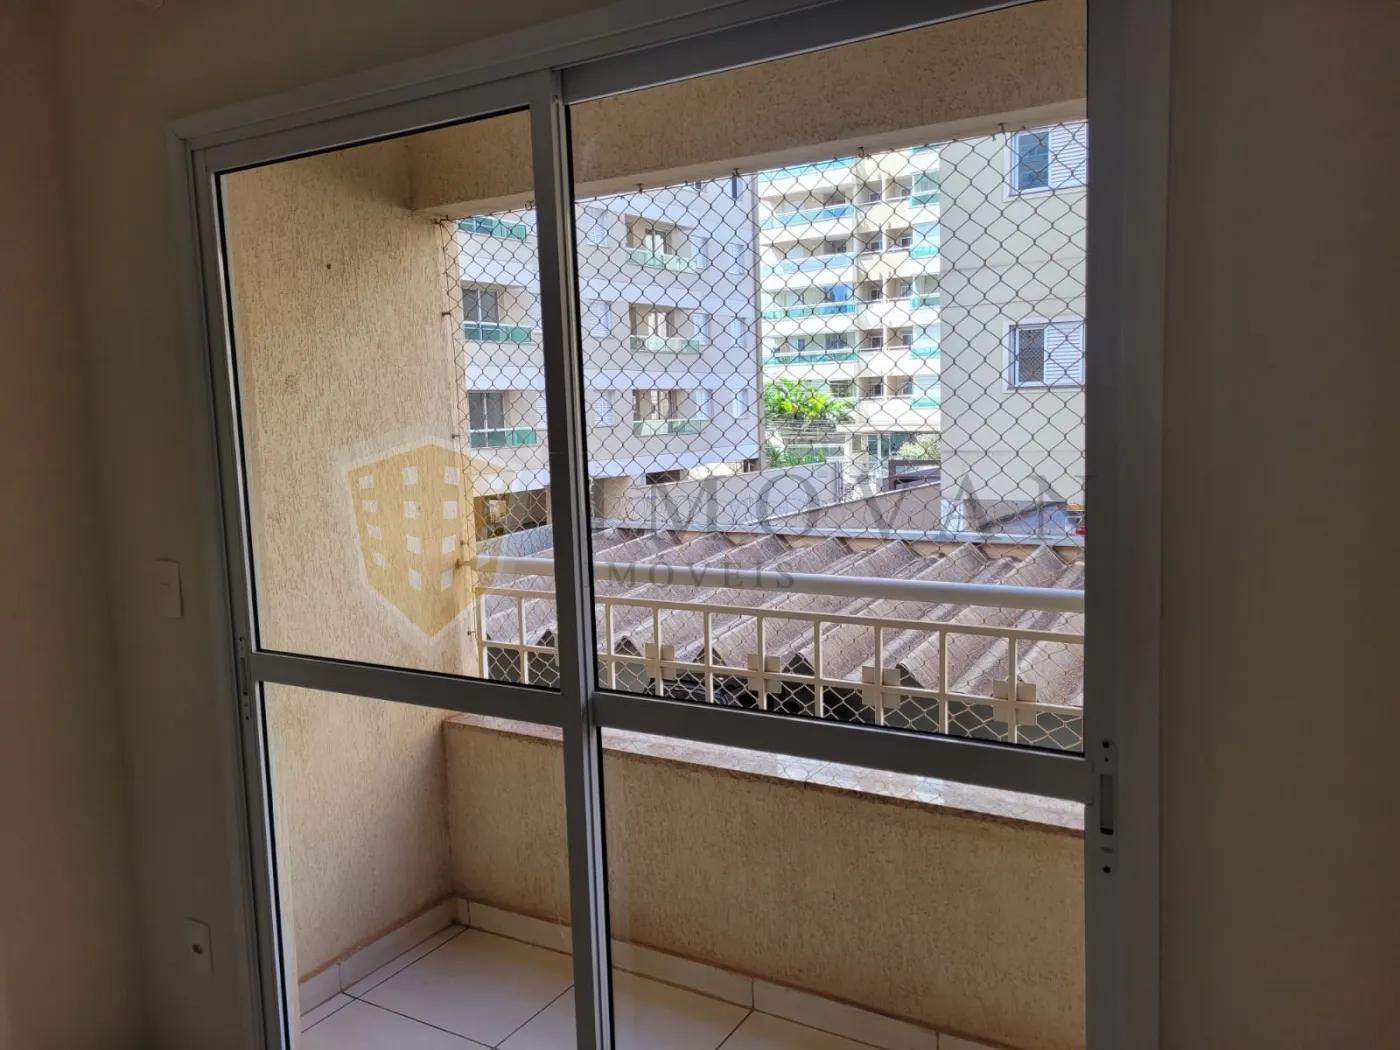 Alugar Apartamento / Padrão em Ribeirão Preto R$ 1.250,00 - Foto 5